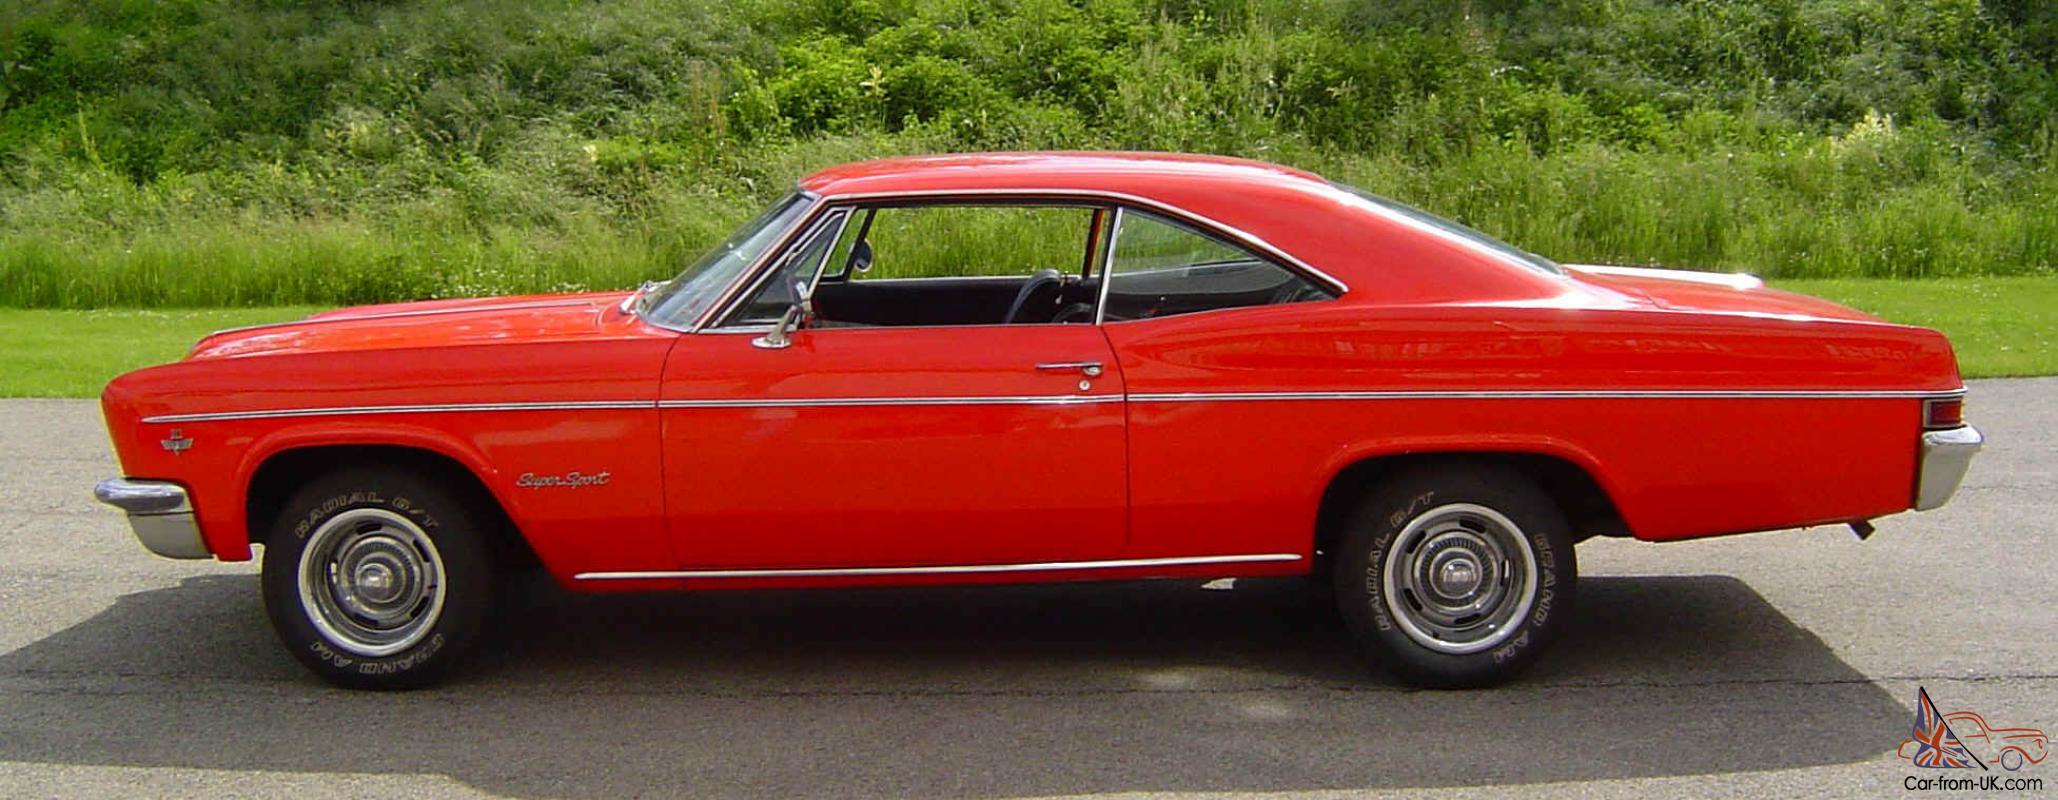 Chevrolet Impala 1967 - car classics.